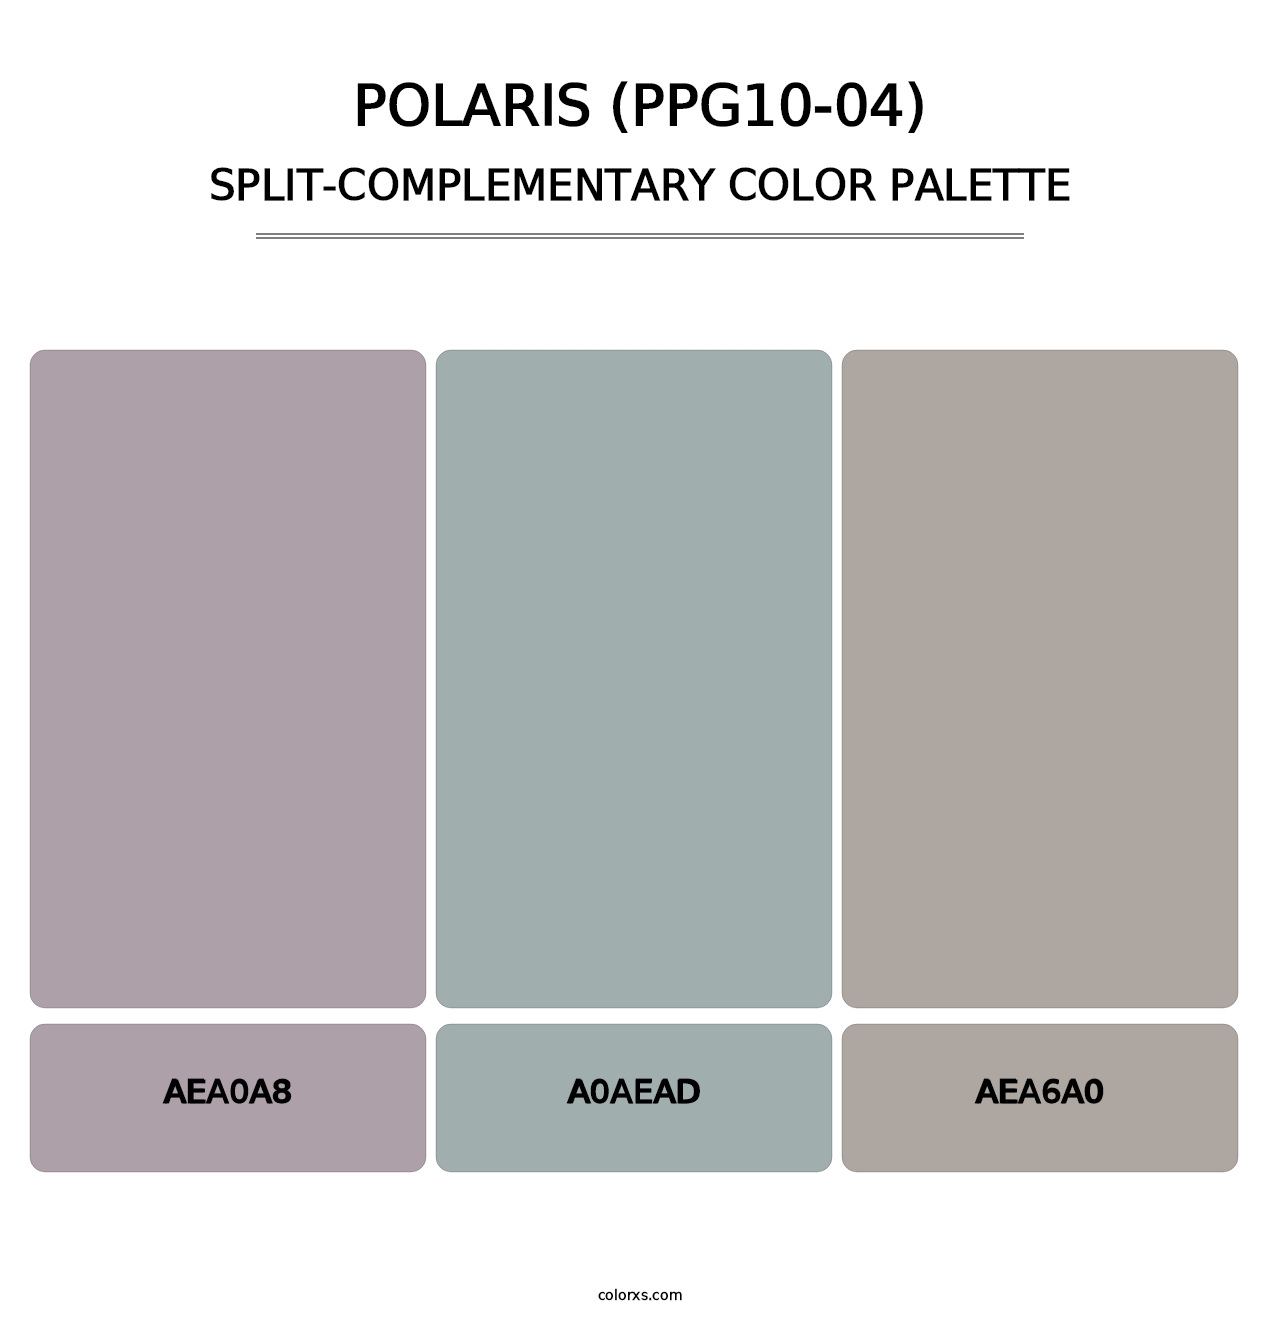 Polaris (PPG10-04) - Split-Complementary Color Palette